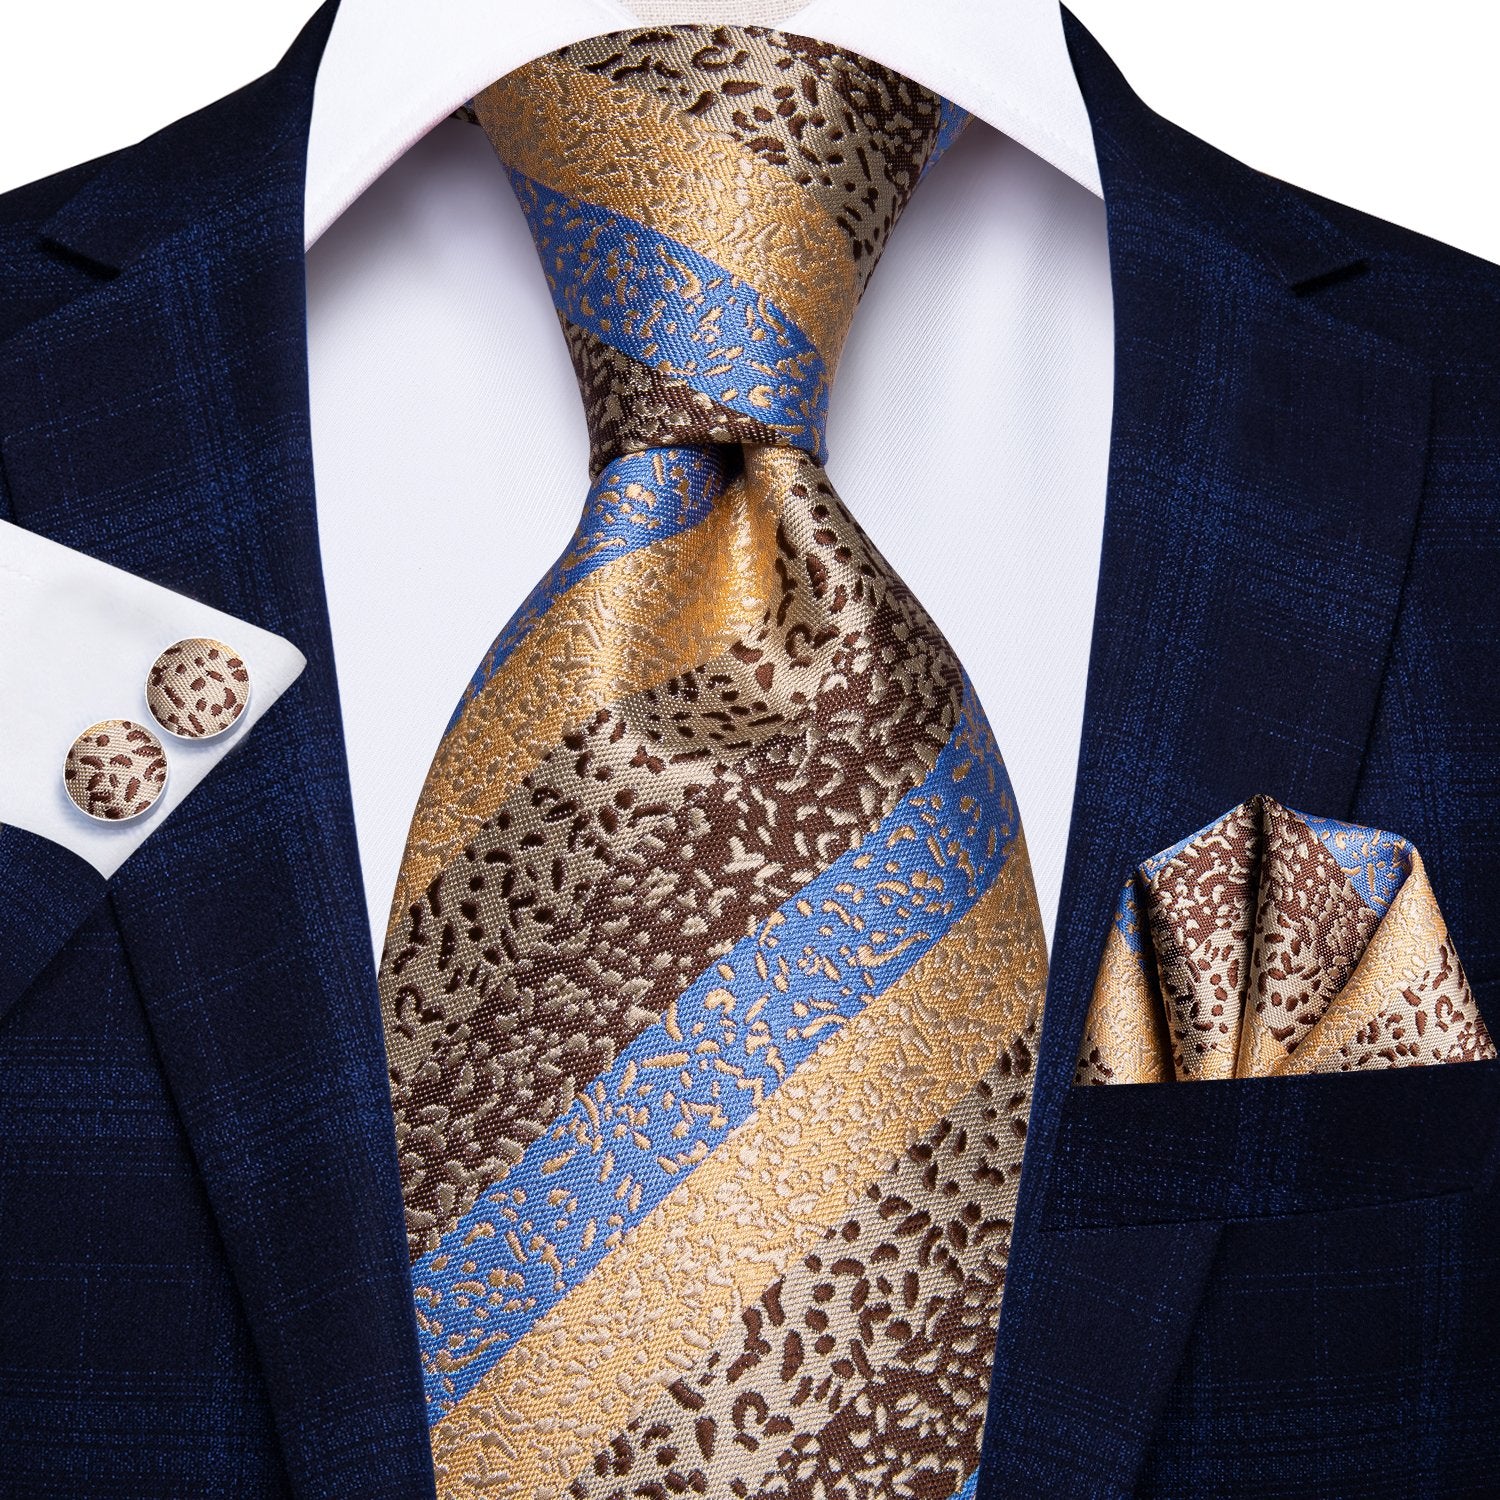 Blue Brown Striped Tie Handkerchief Cufflinks Set with Wedding Brooch